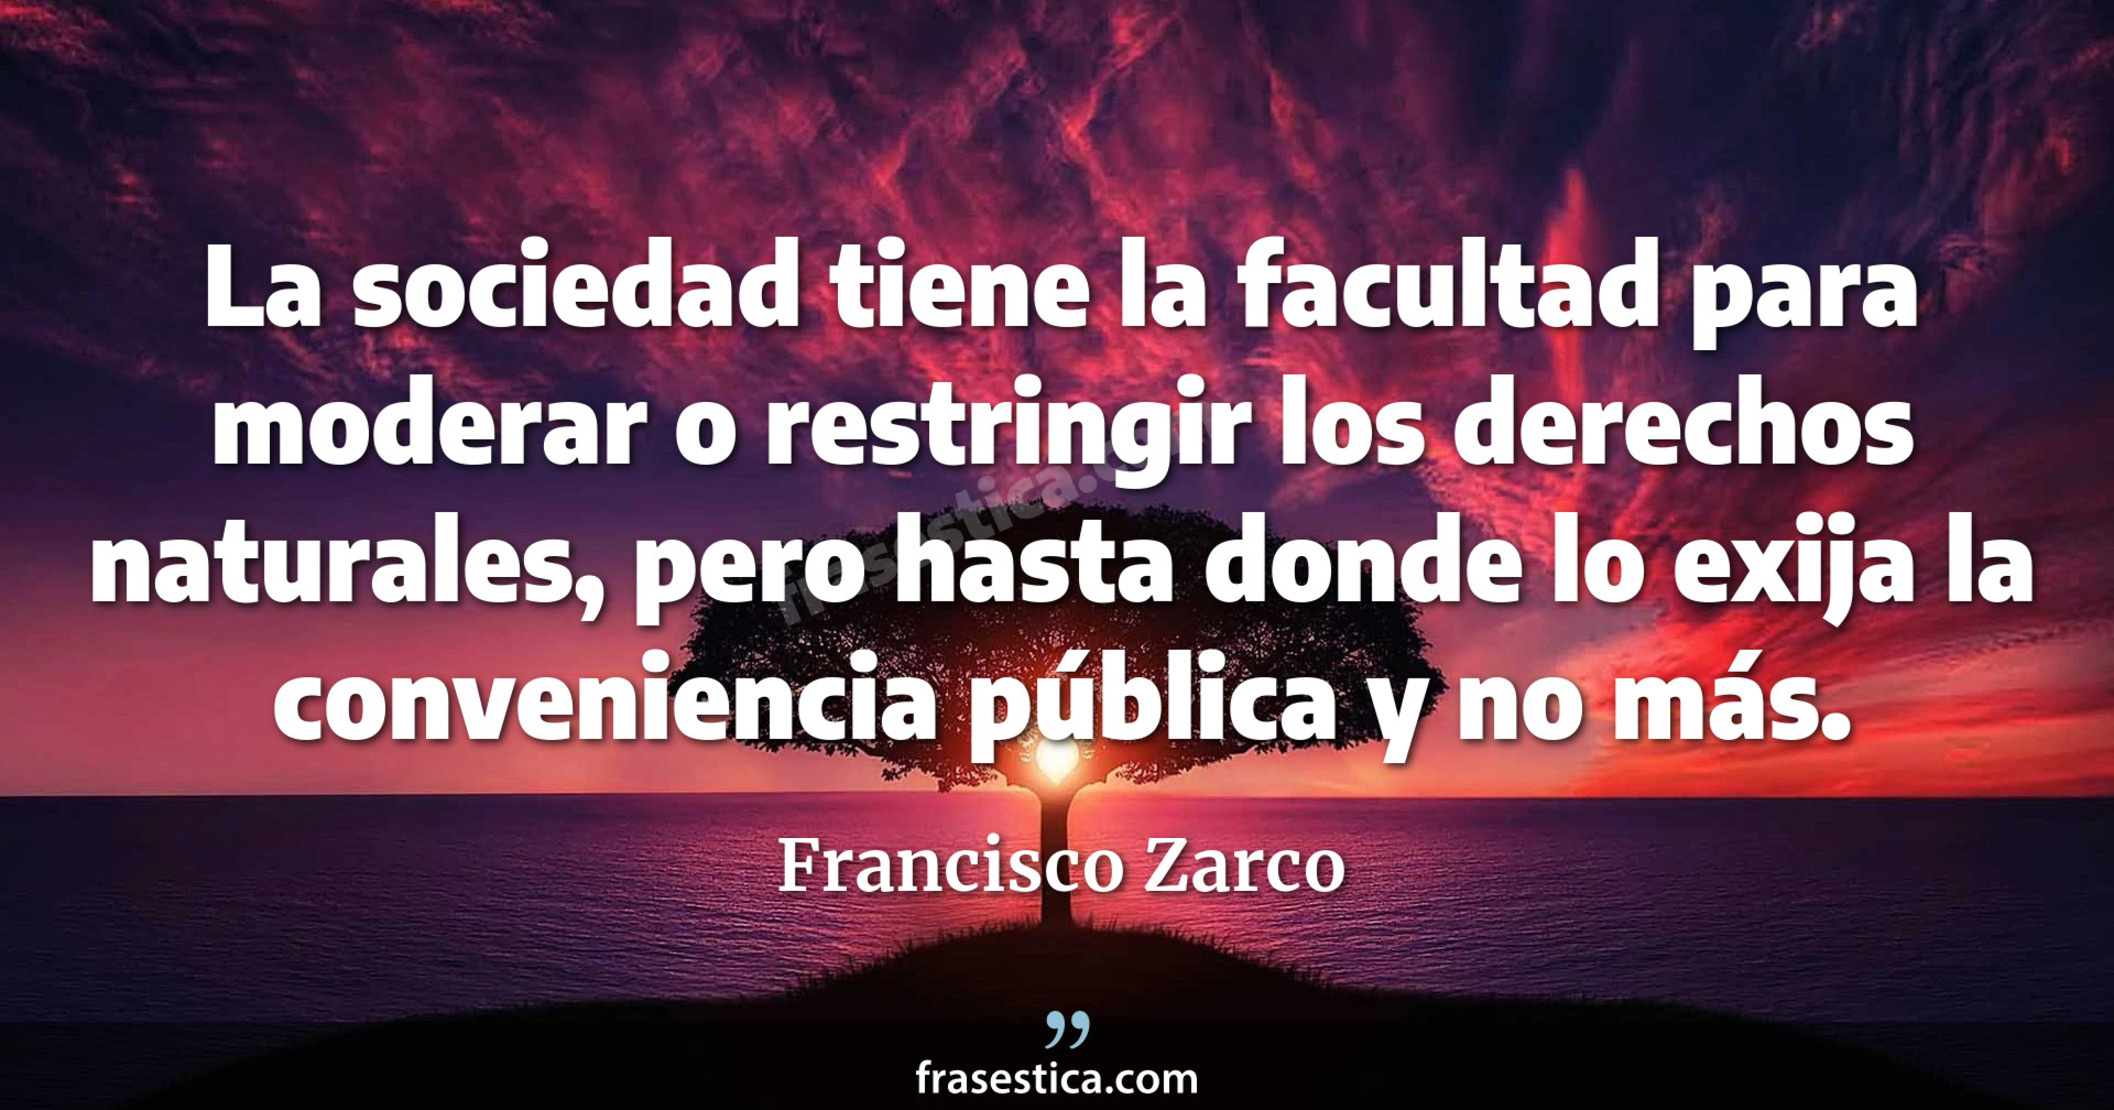 La sociedad tiene la facultad para moderar o restringir los derechos naturales, pero hasta donde lo exija la conveniencia pública y no más. - Francisco Zarco